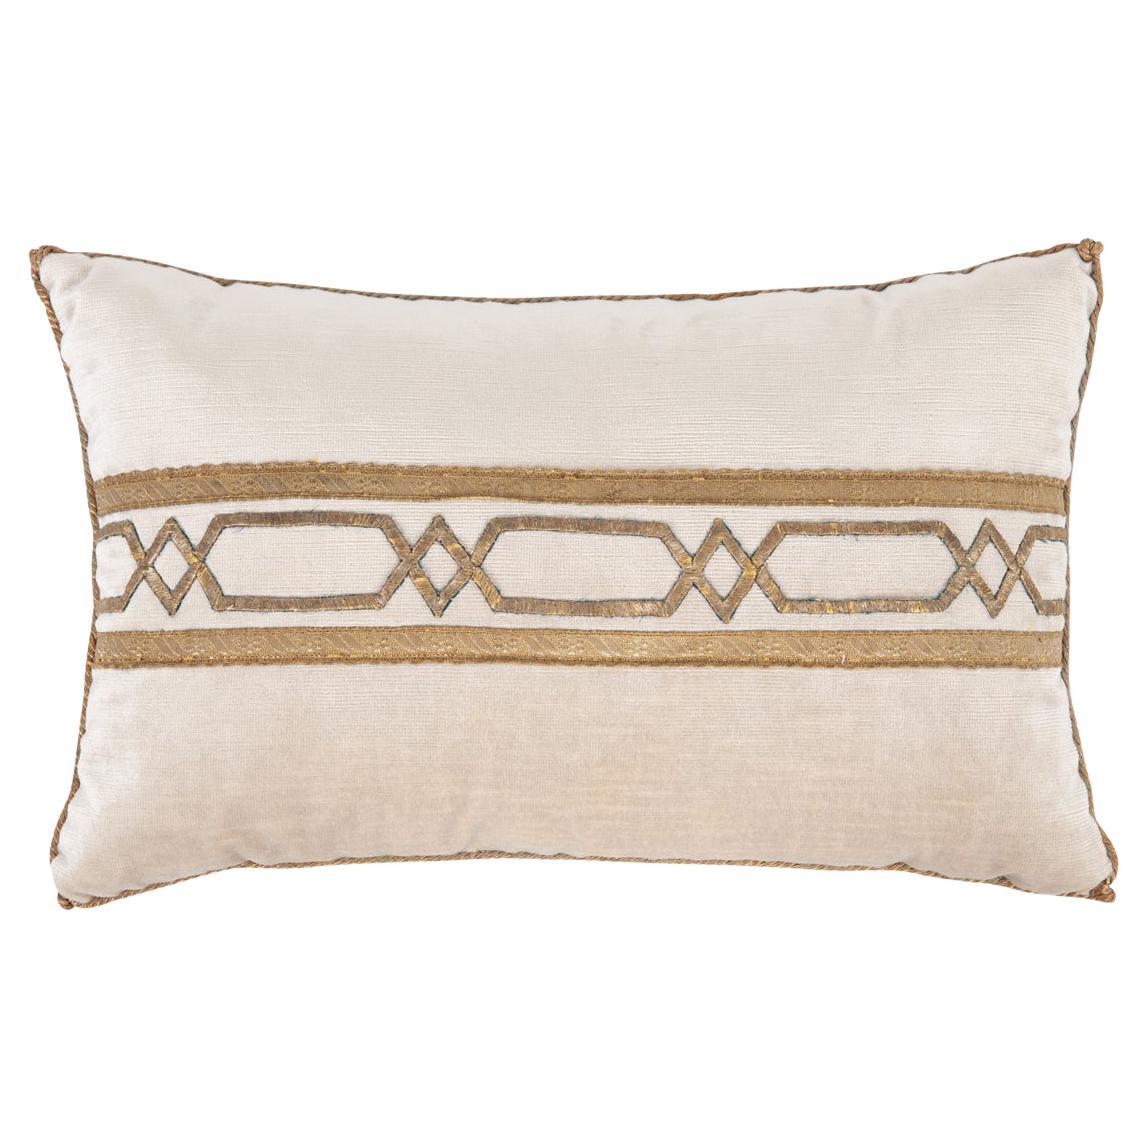 B. Viz Antique Textile Pillow